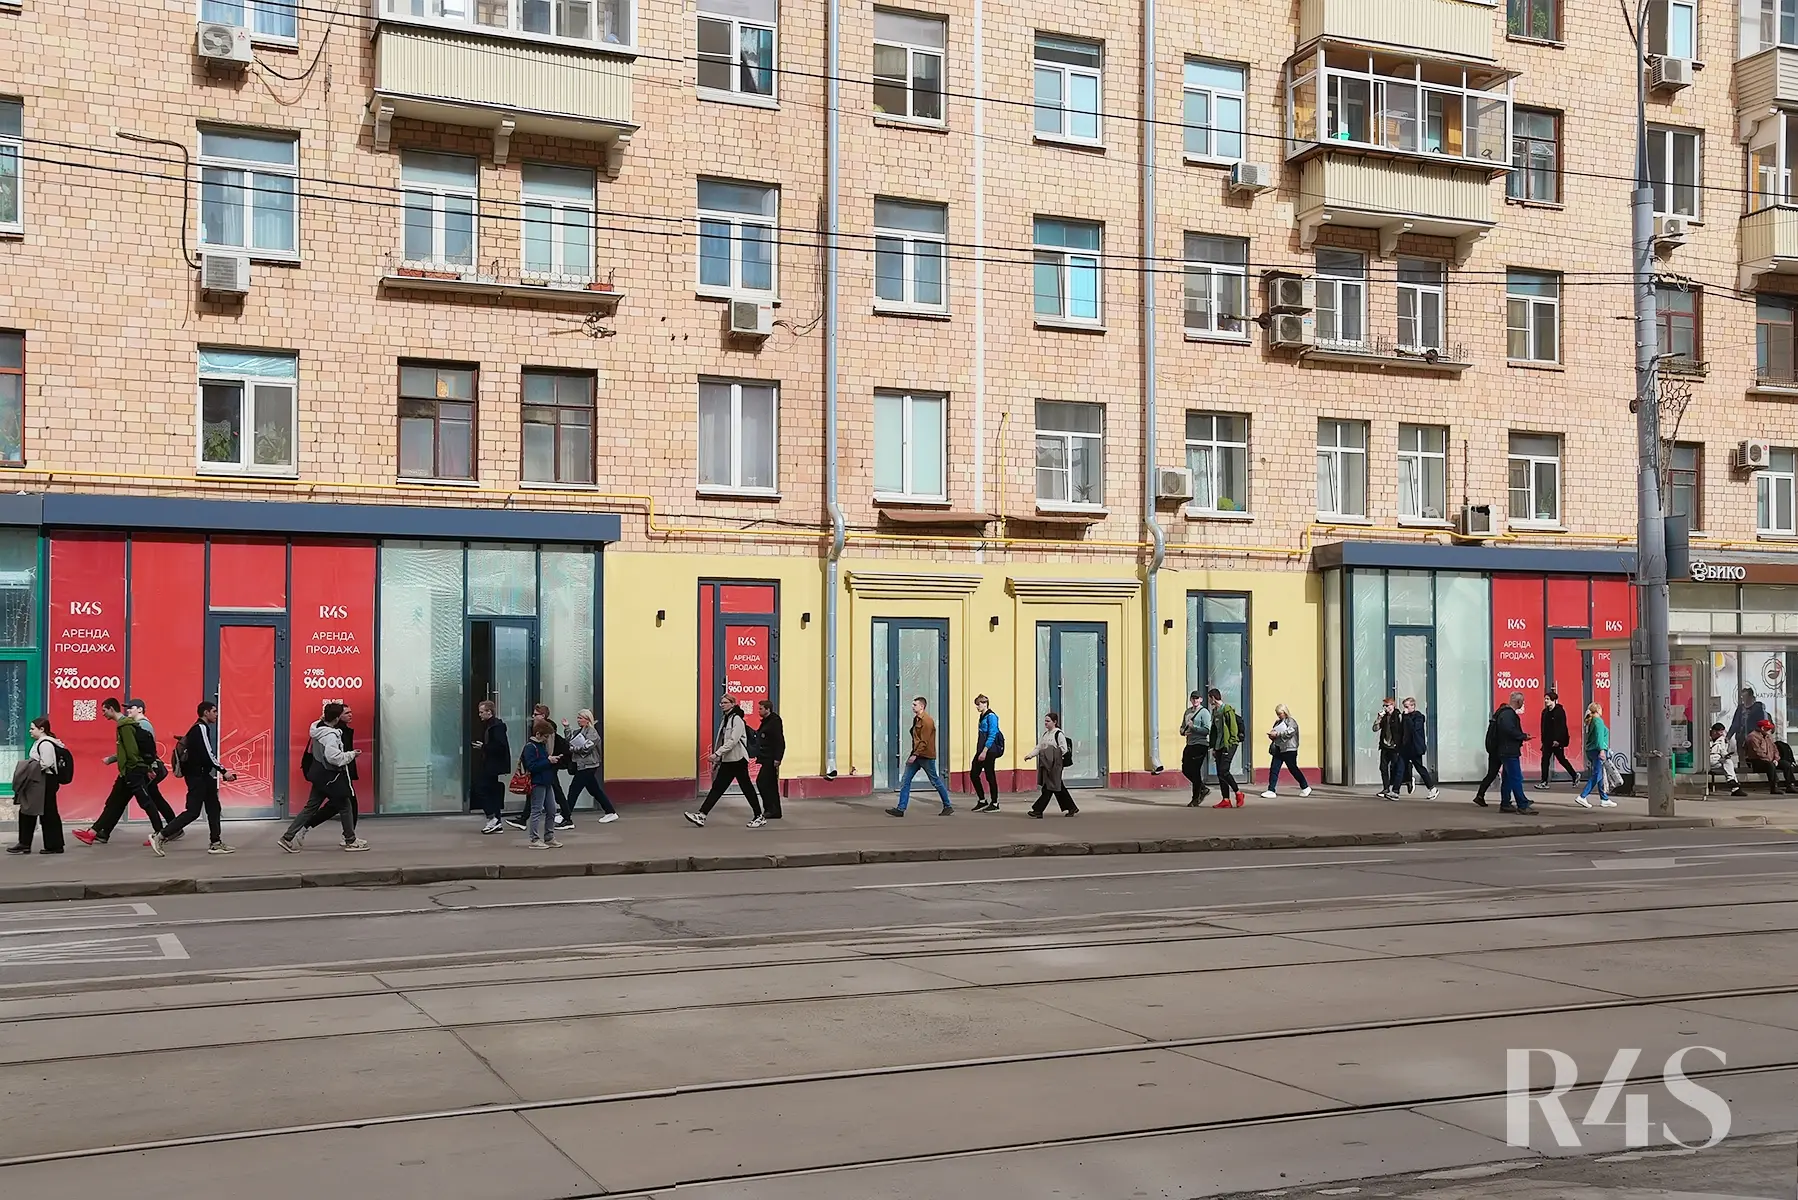 Аренда торговых помещений площадью 17.8 - 34 м2 в Москве:  Красноказарменная, 23 R4S | Realty4Sale